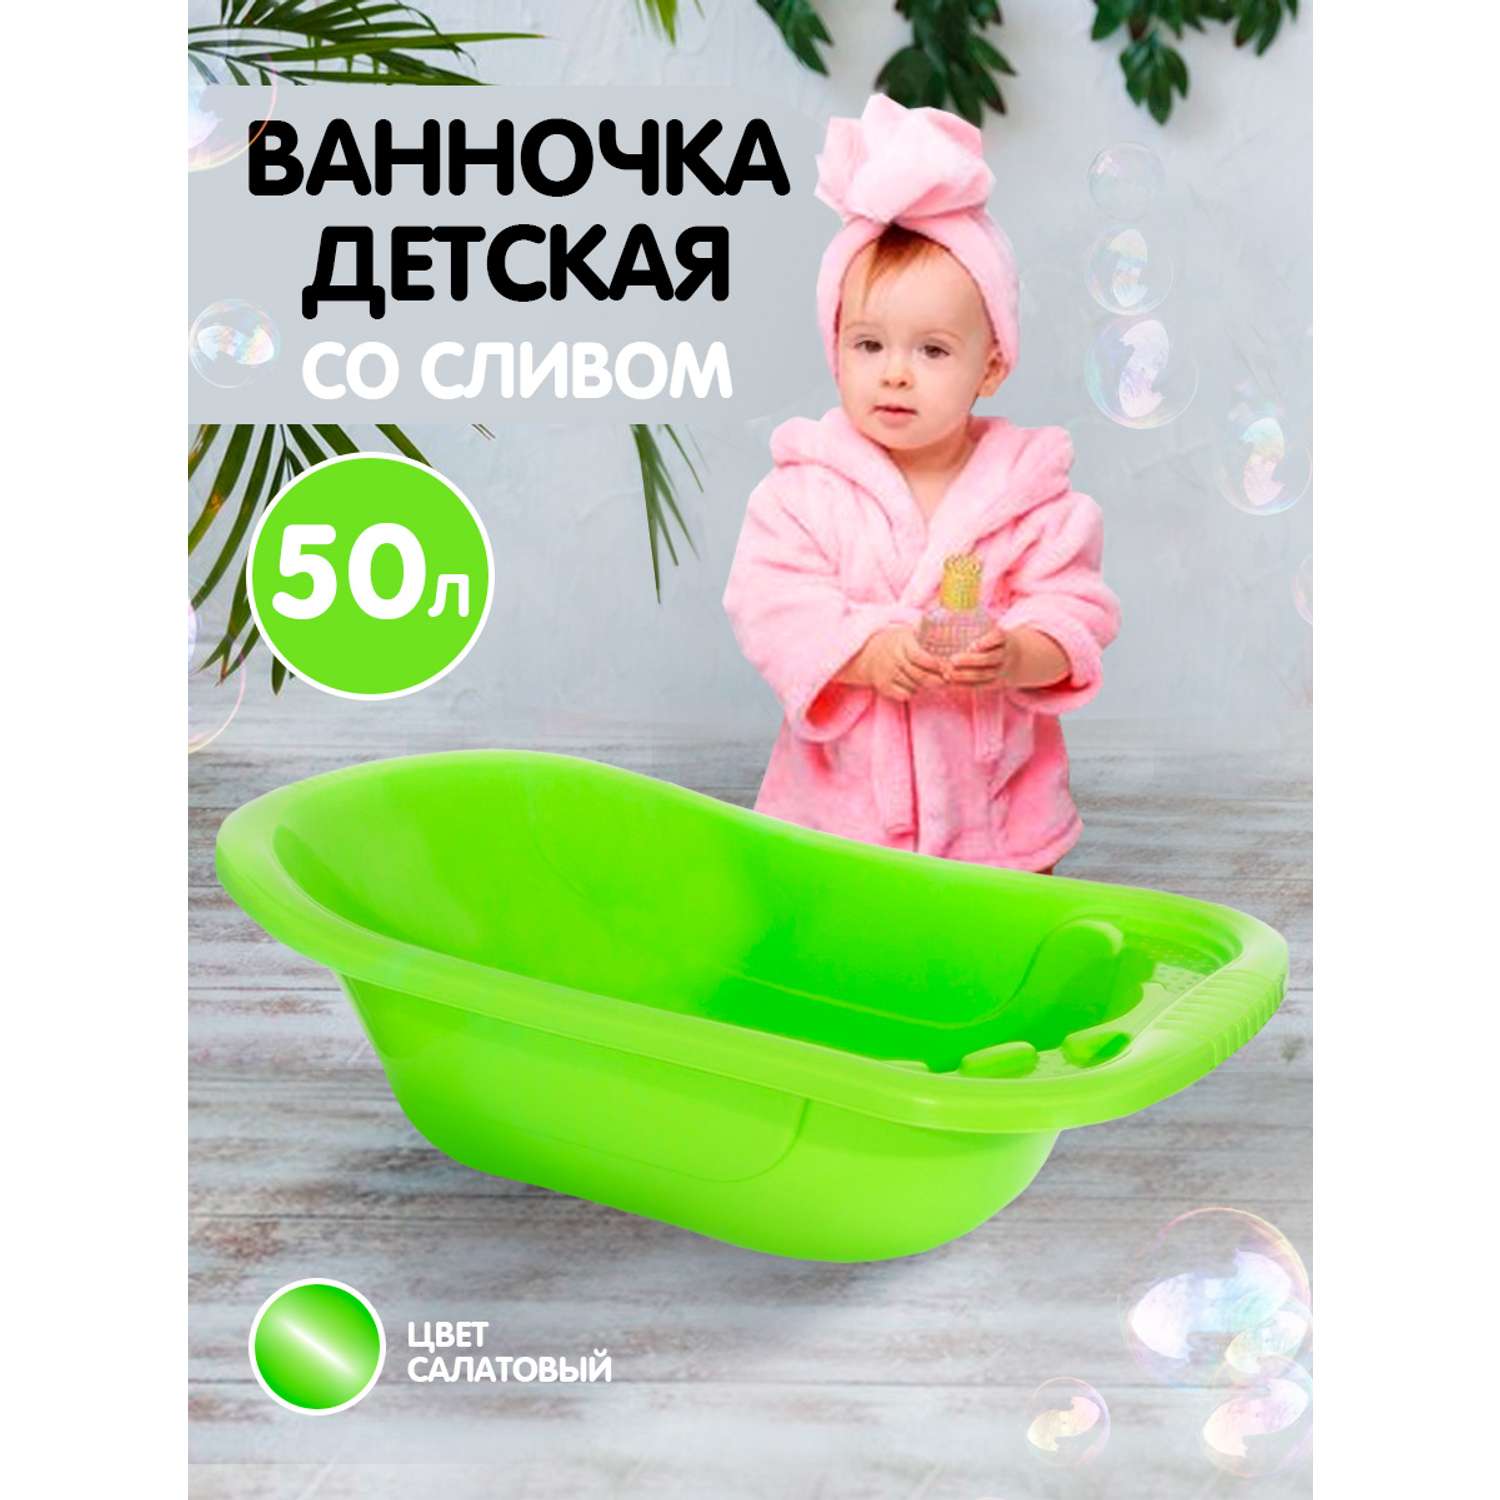 Ванна детская elfplast для купания со сливным клапаном 50 л салатовый - фото 2